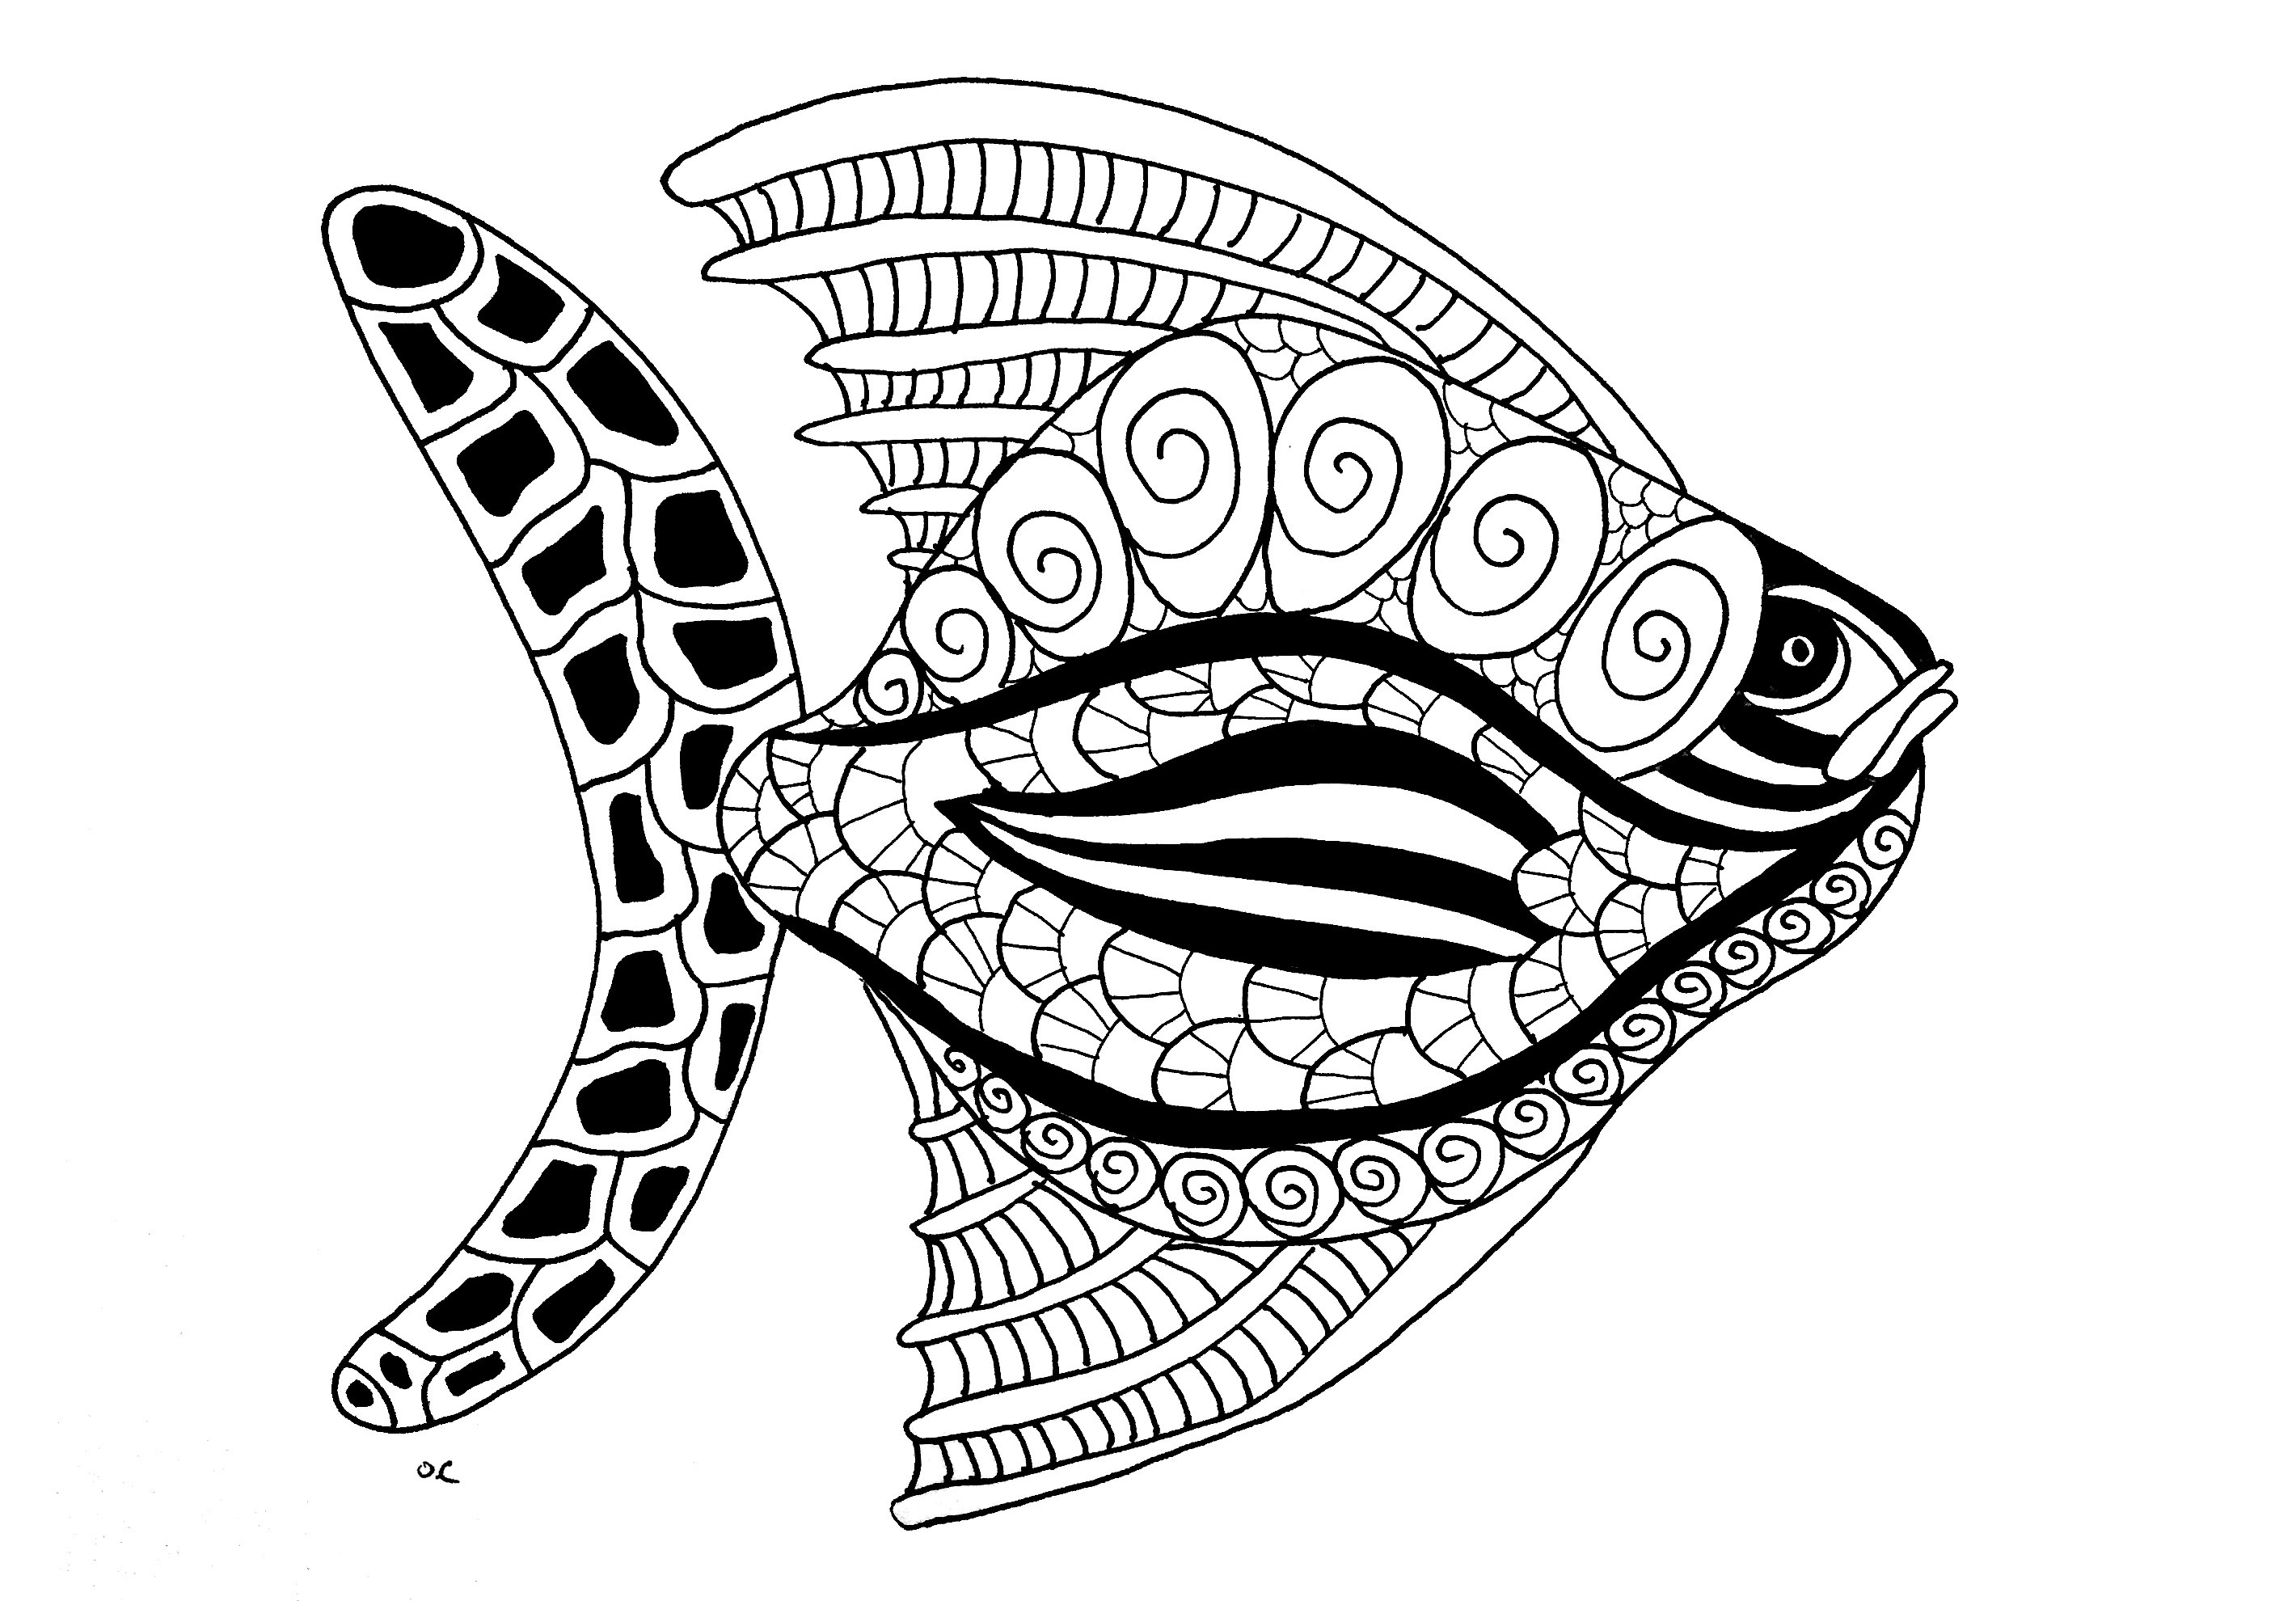 Image de poissons à télécharger et imprimer pour enfants